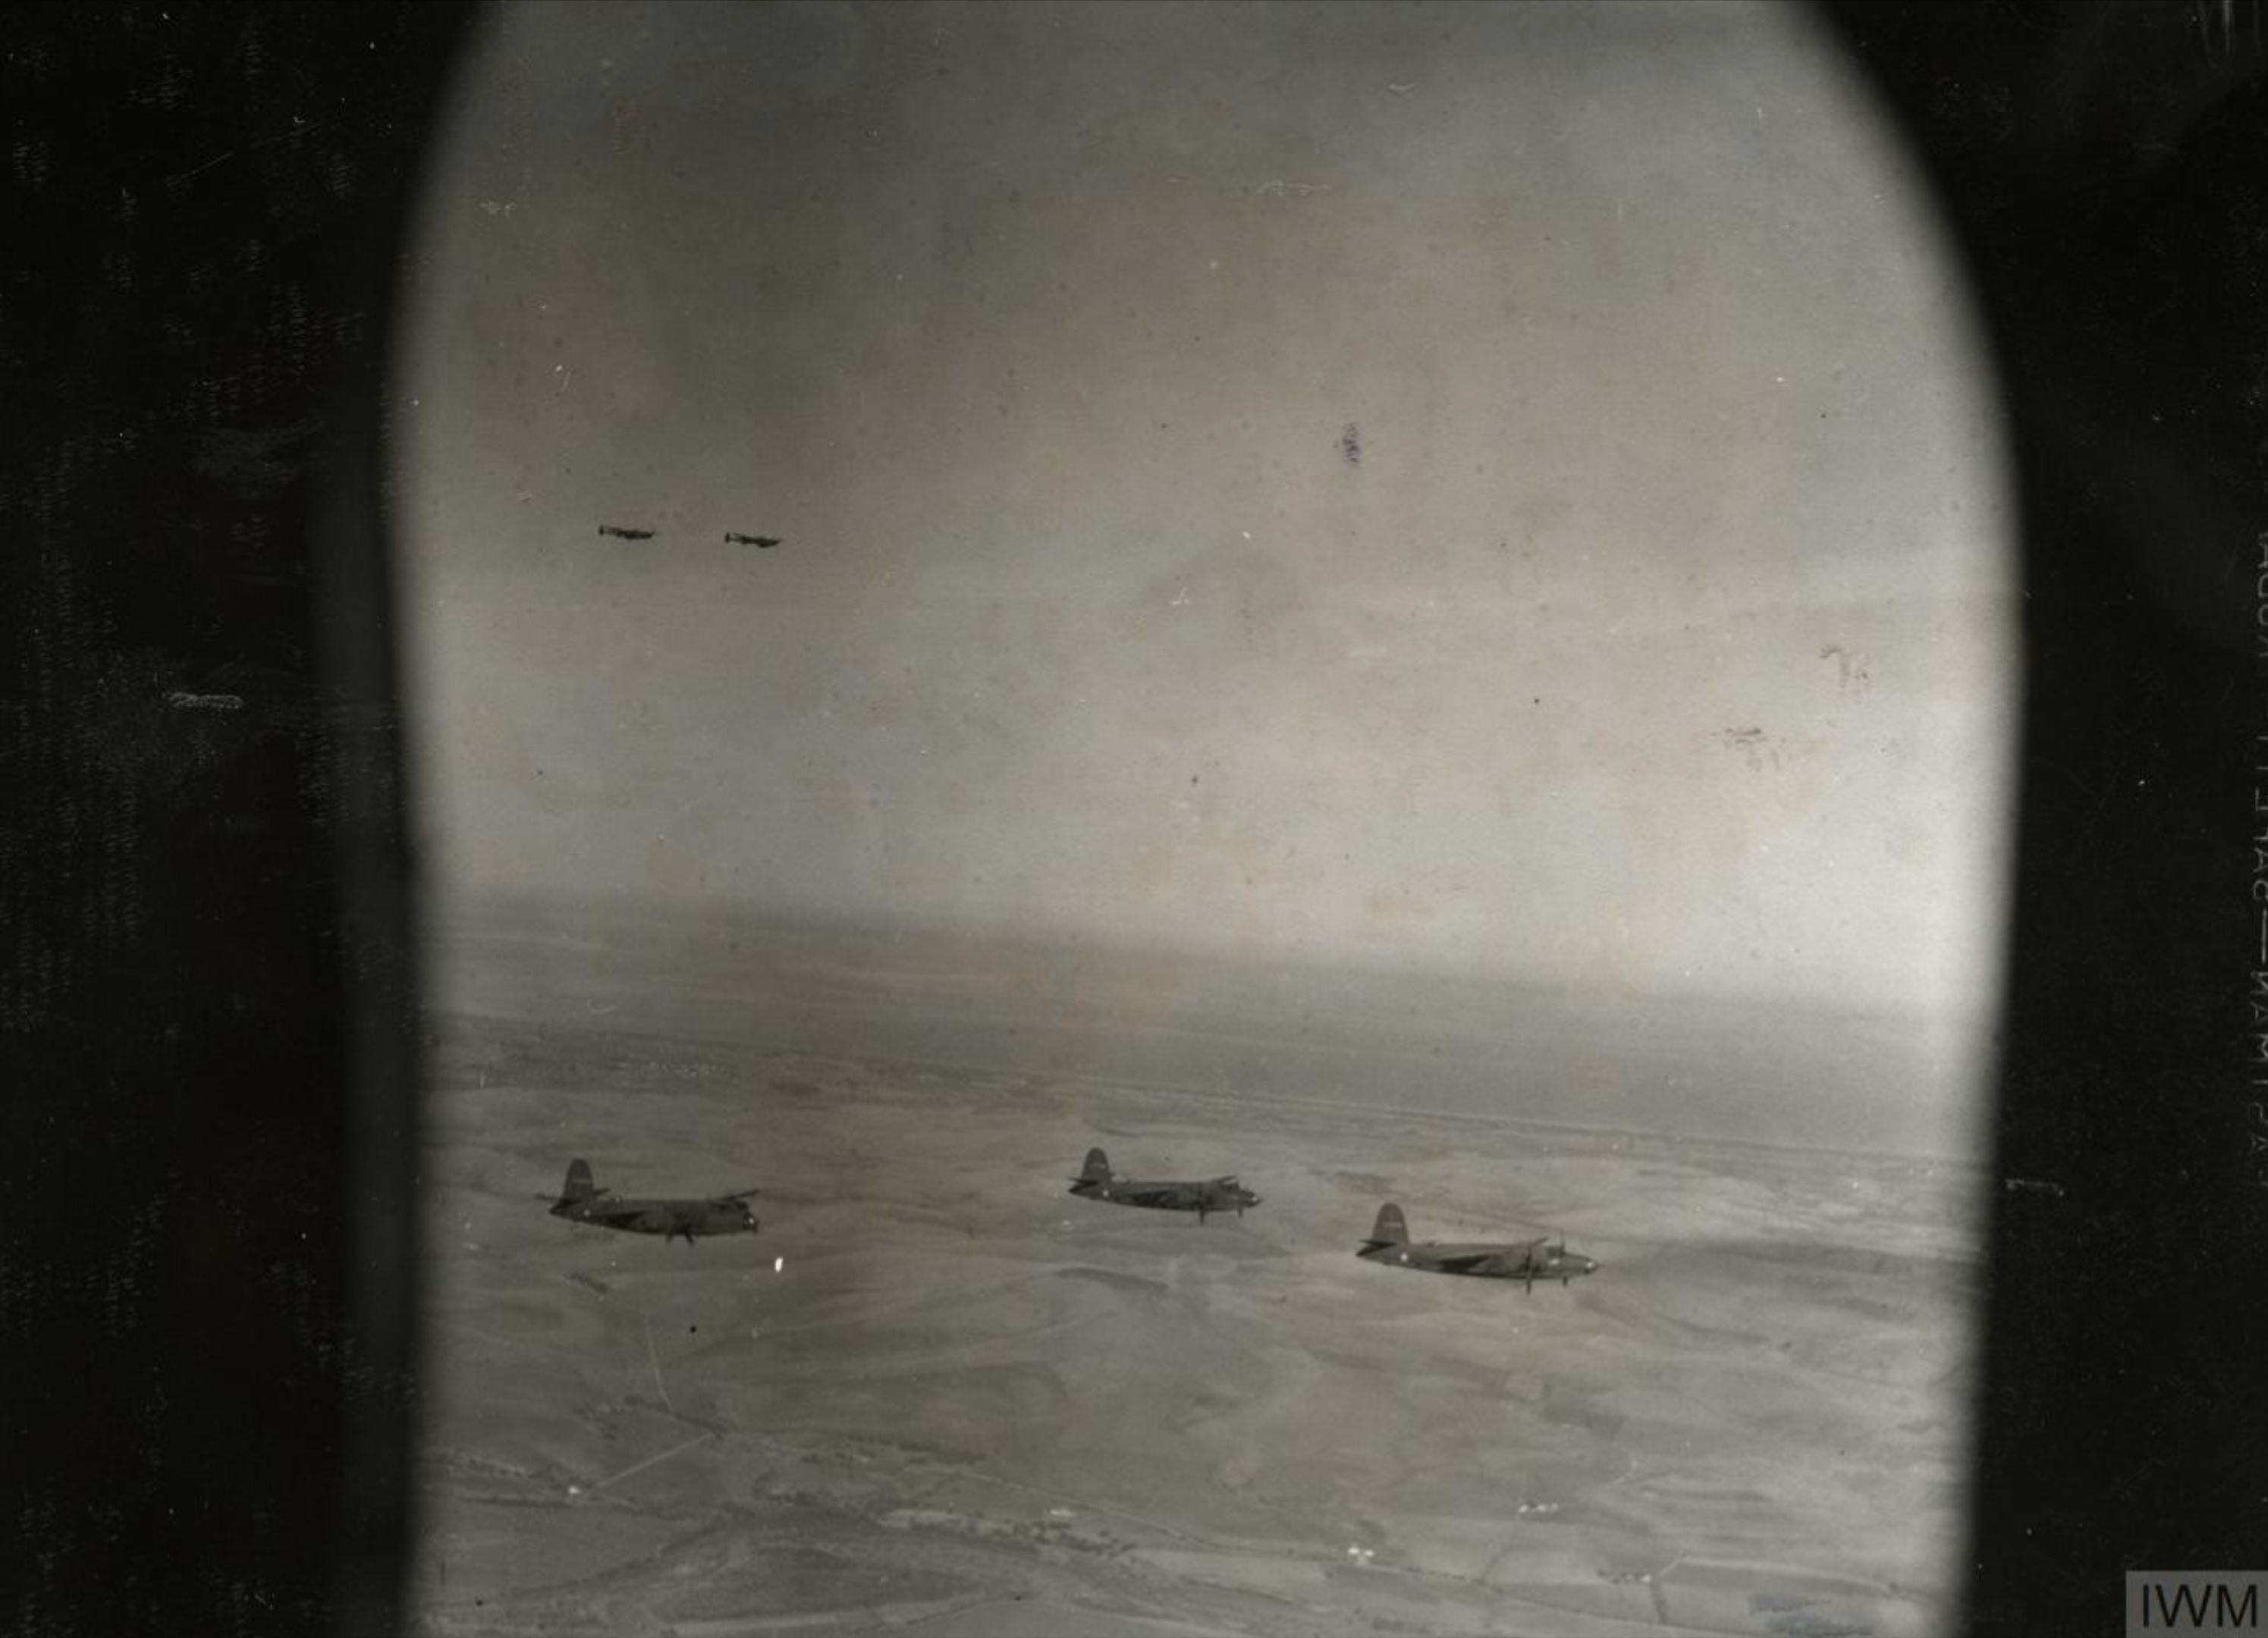 41 17803 B 26B Marauder 12AF 319BG438BS (R) in flight during a raid over Bizerte Tunisia 4 Dec 1942 FRE11646